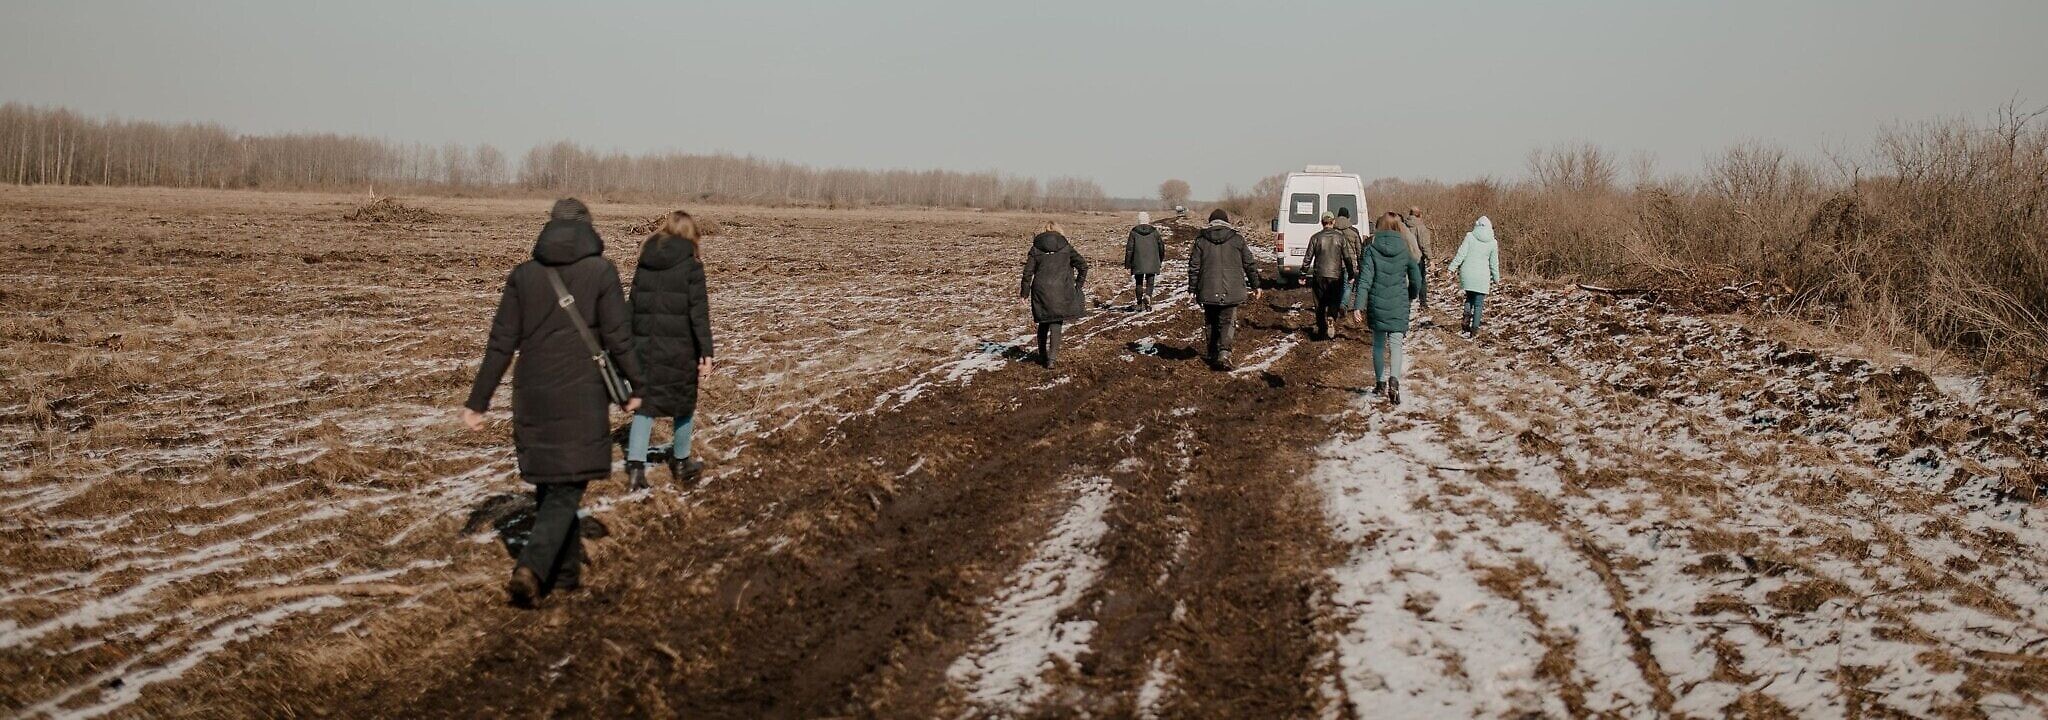 אזרחים משיירת החילוץ מירוסלבקה צועדים ברגל כדי להקל את העומס על כלי הרכב, אוקראינה 22 במרץ 2022 (צילום: Klara Lisinski/ Dorcas Kauffman)